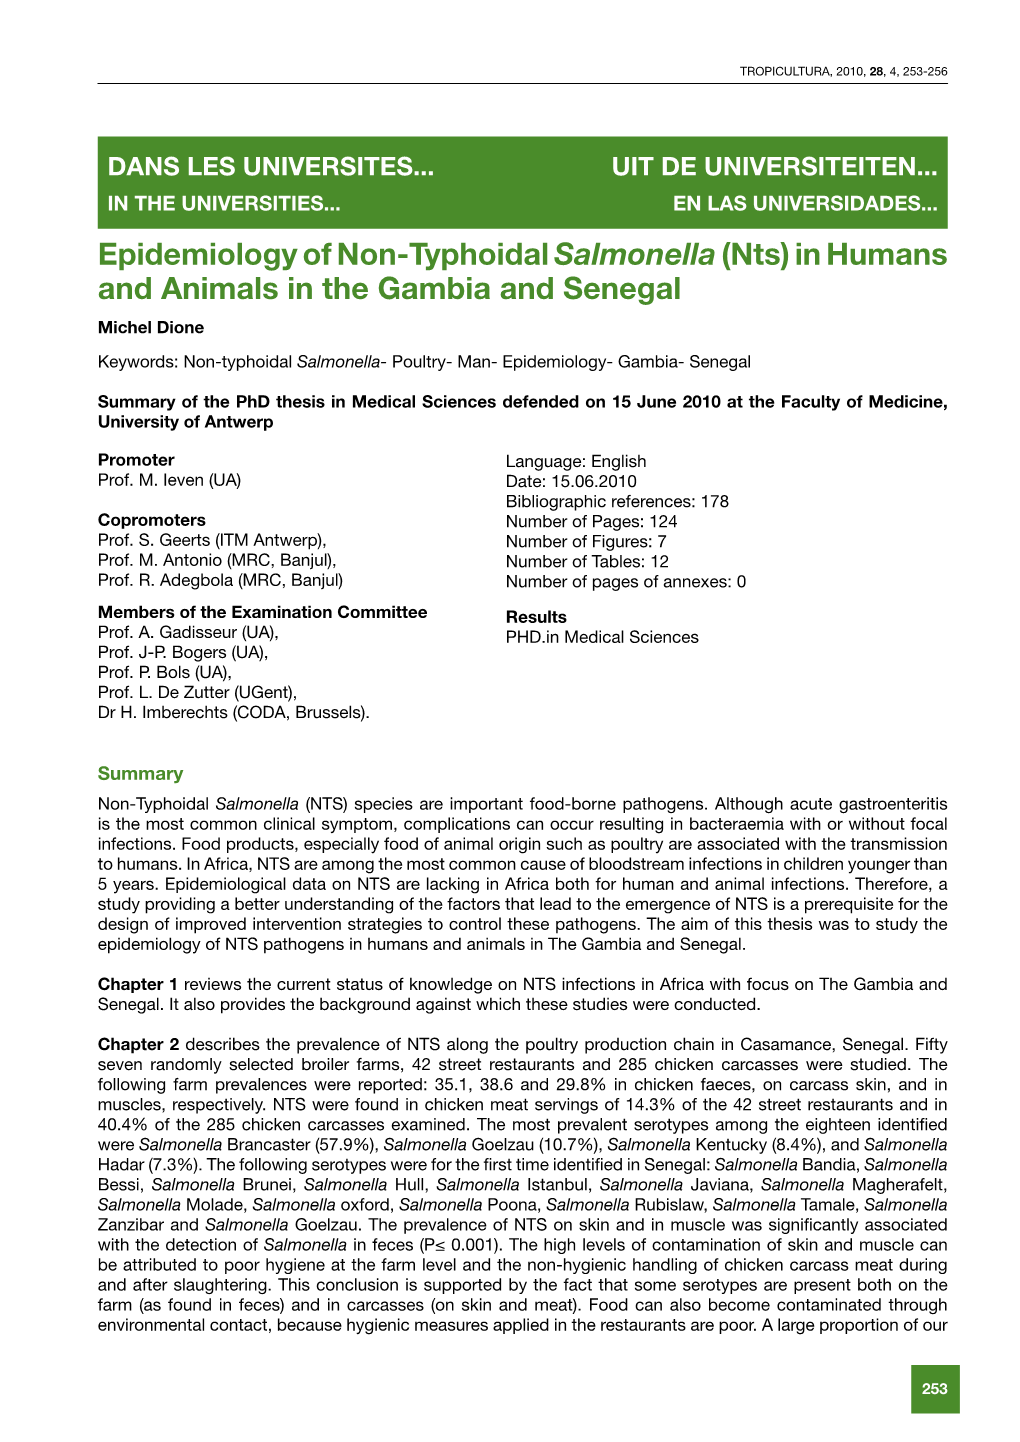 Epidemiology of Non-Typhoidal Salmonella(Nts)